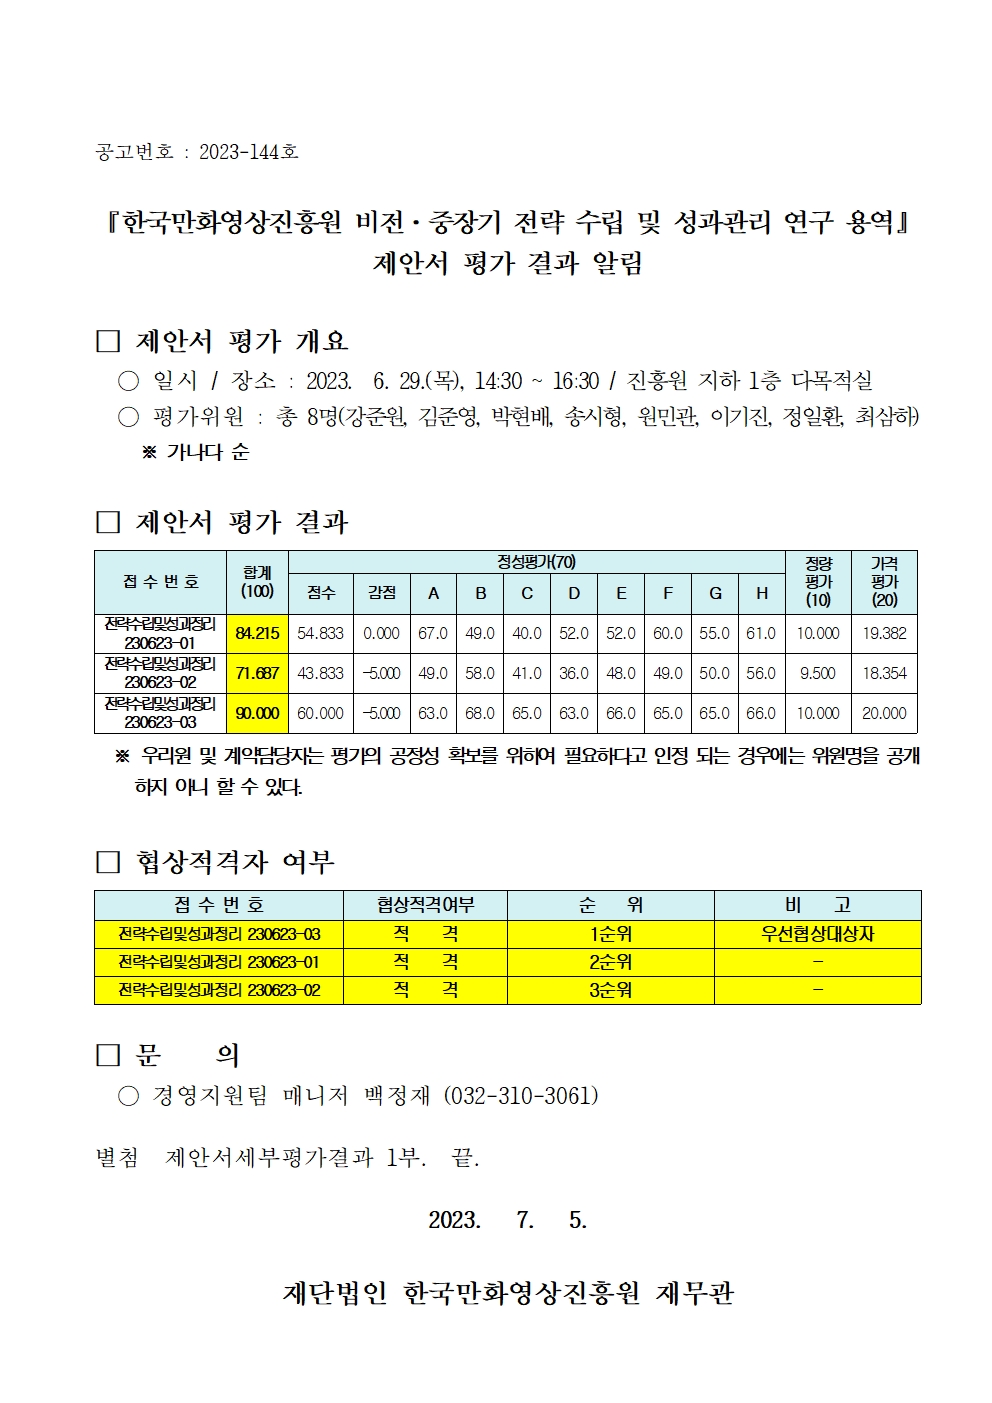 『한국만화영상진흥원 비전ㆍ중장기 전략 수립 및 성과관리 연구 용역』 제안서 평가 결과 알림